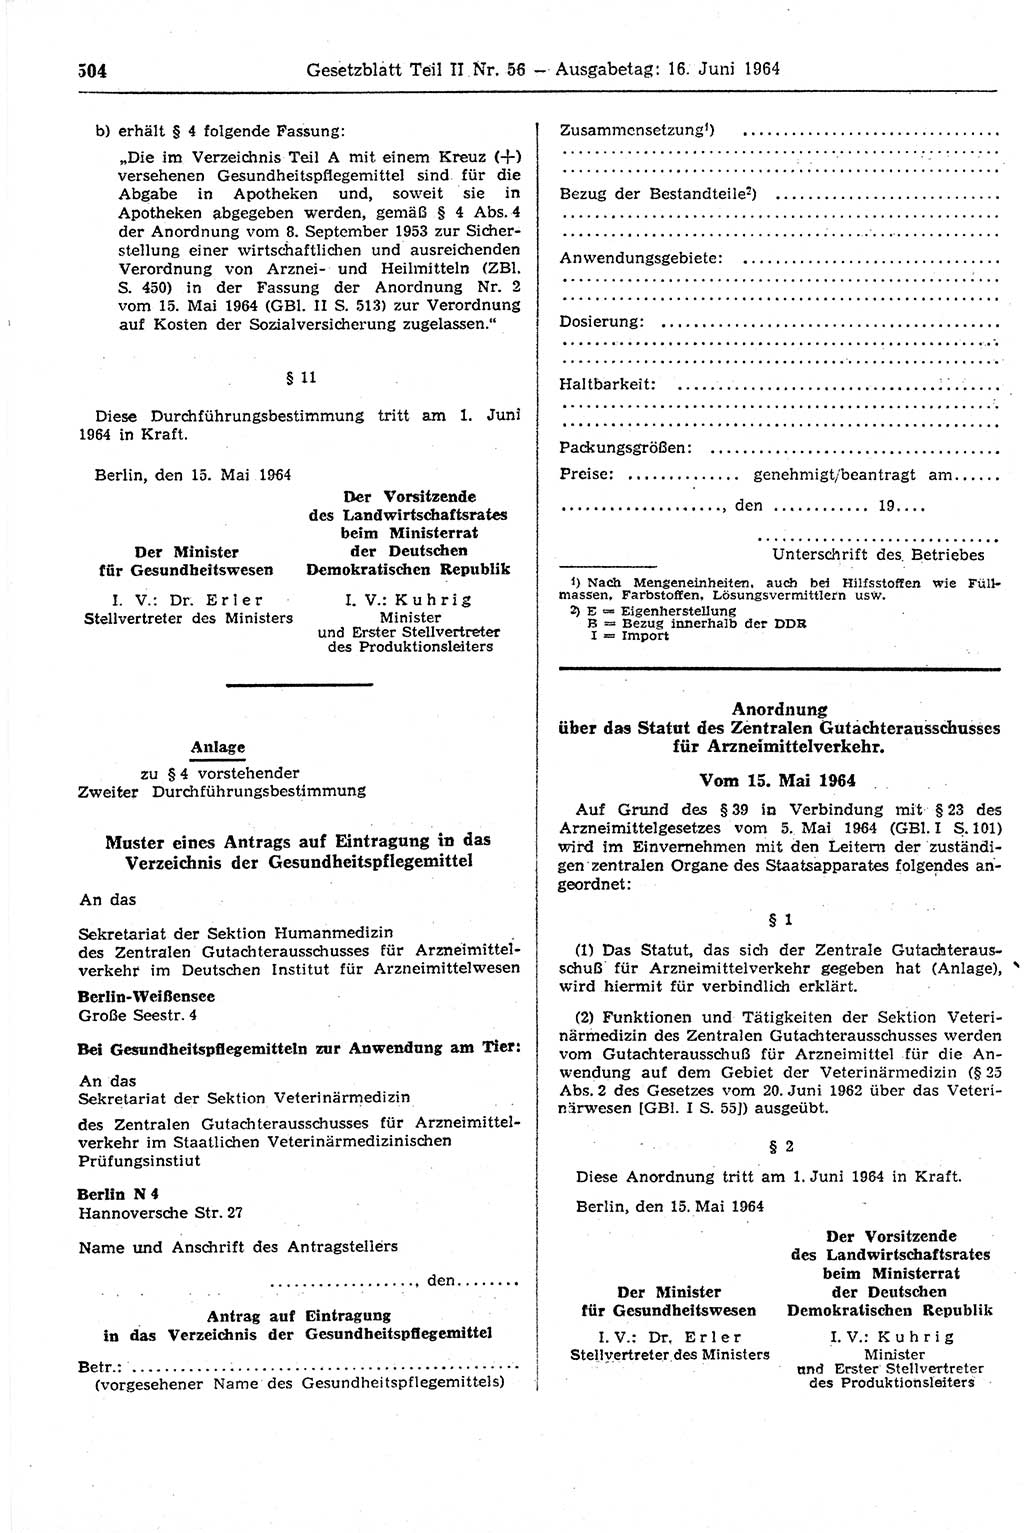 Gesetzblatt (GBl.) der Deutschen Demokratischen Republik (DDR) Teil ⅠⅠ 1964, Seite 504 (GBl. DDR ⅠⅠ 1964, S. 504)